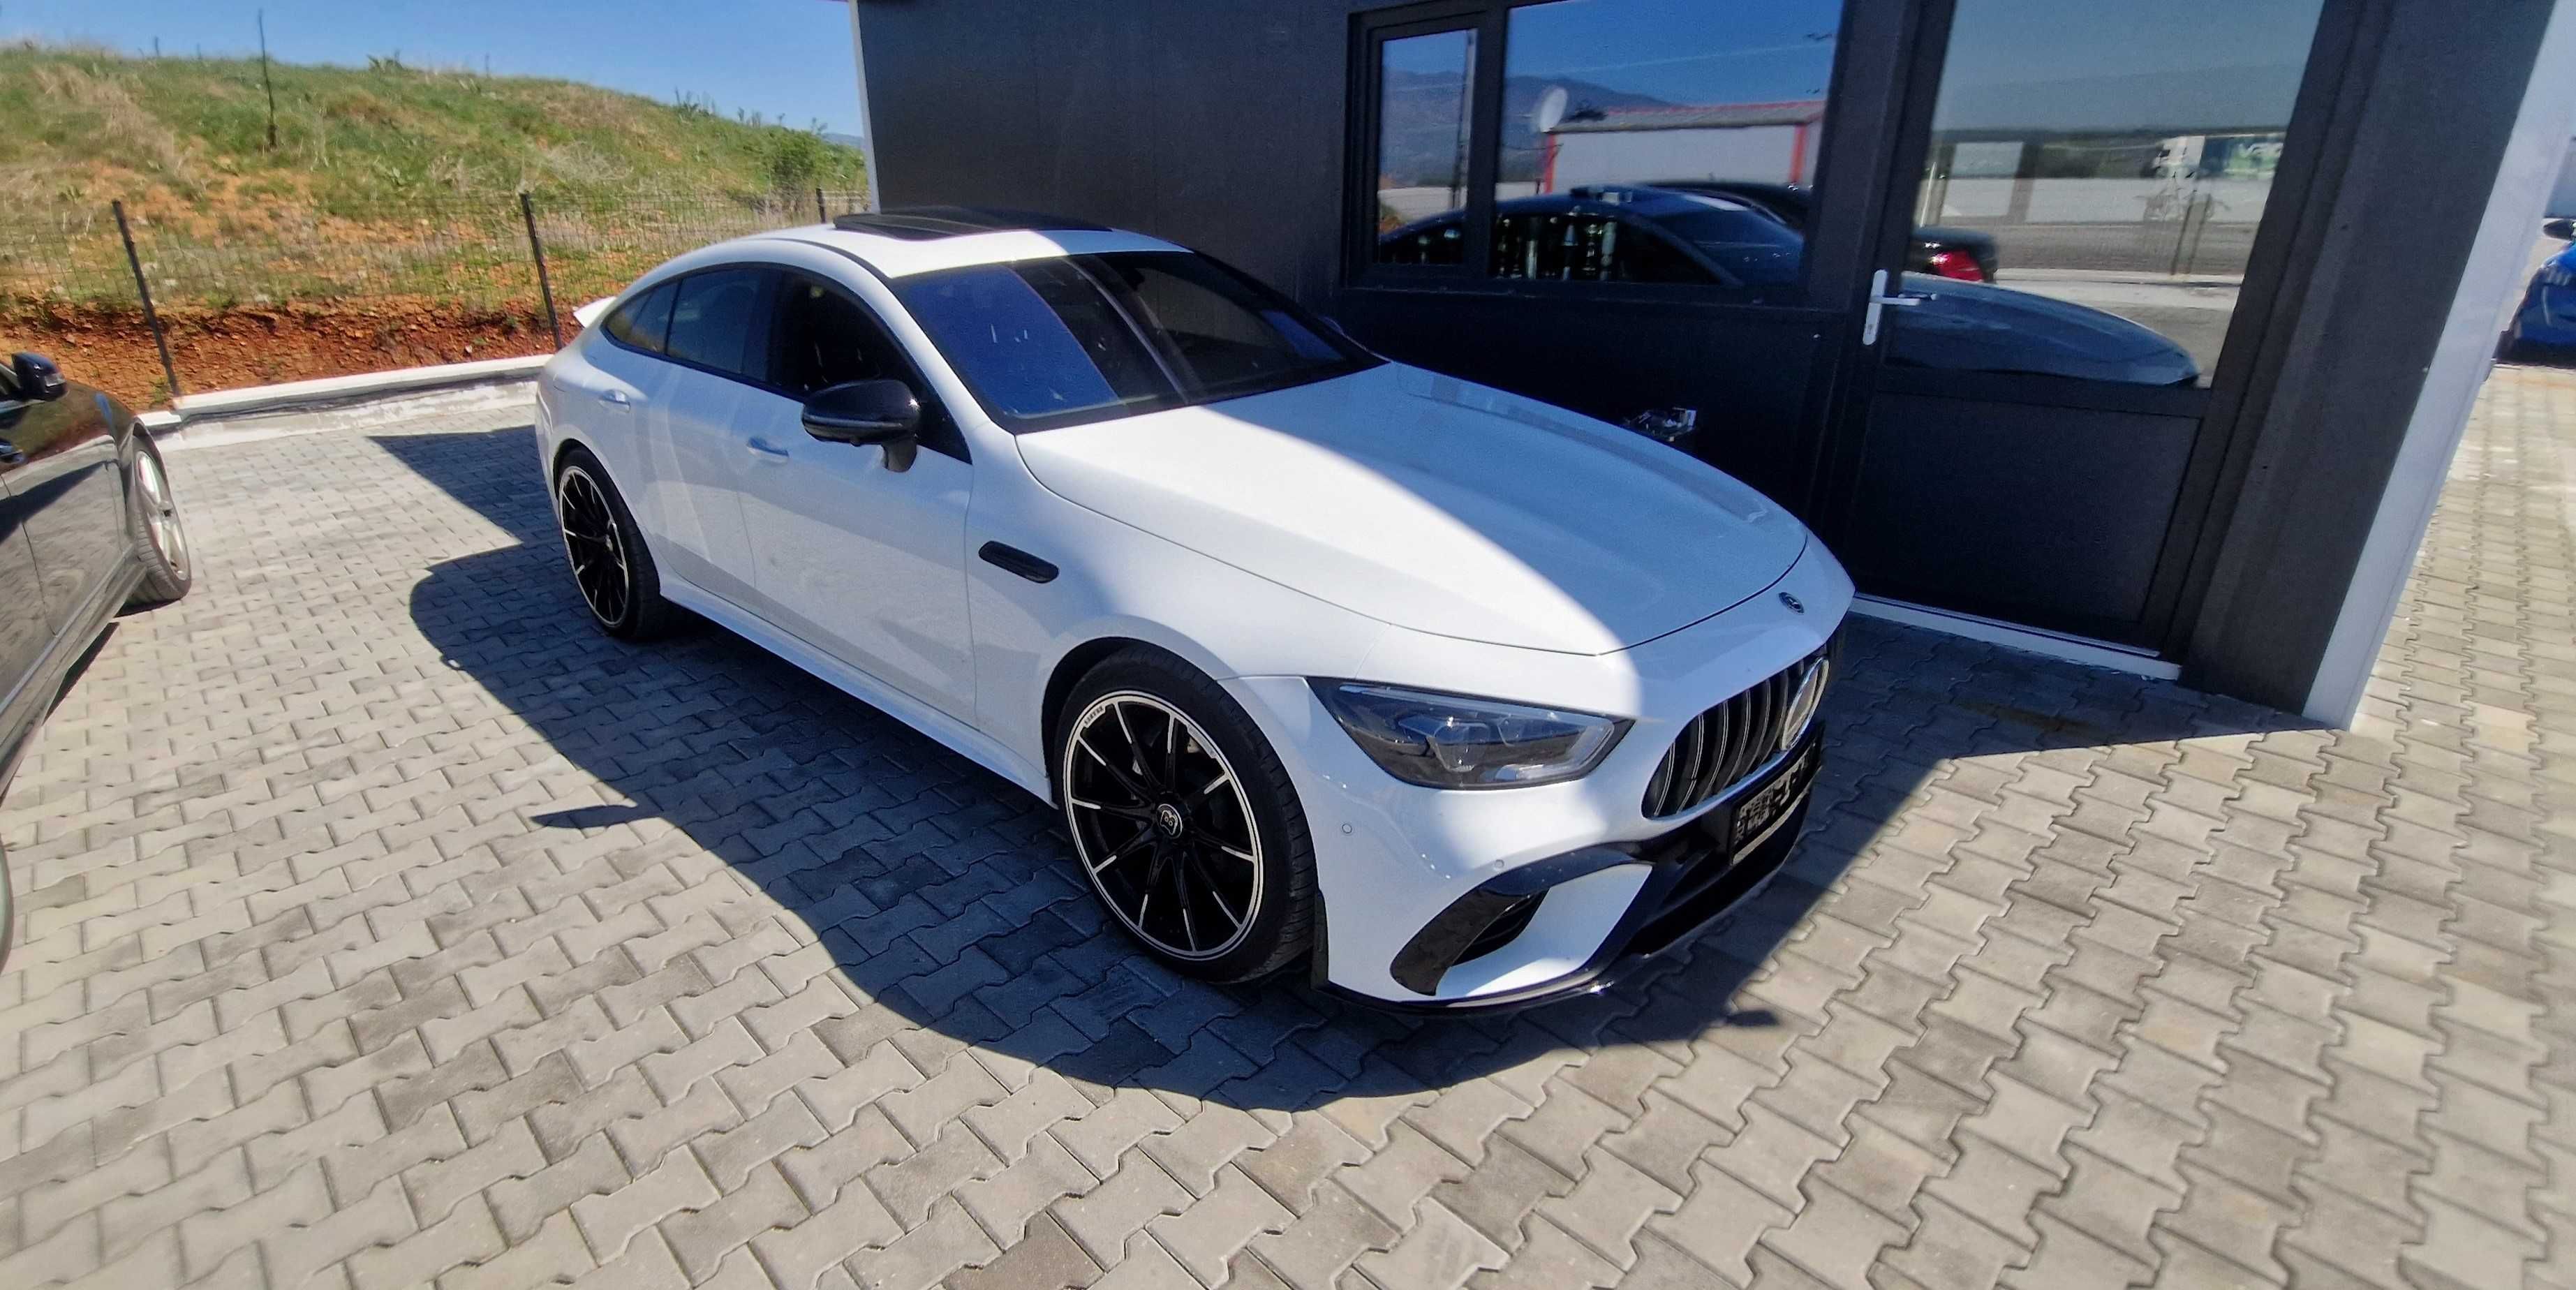 Кодиране за Mercedes Benz /// AMG menu ,Agility,Video in motion,Carpla